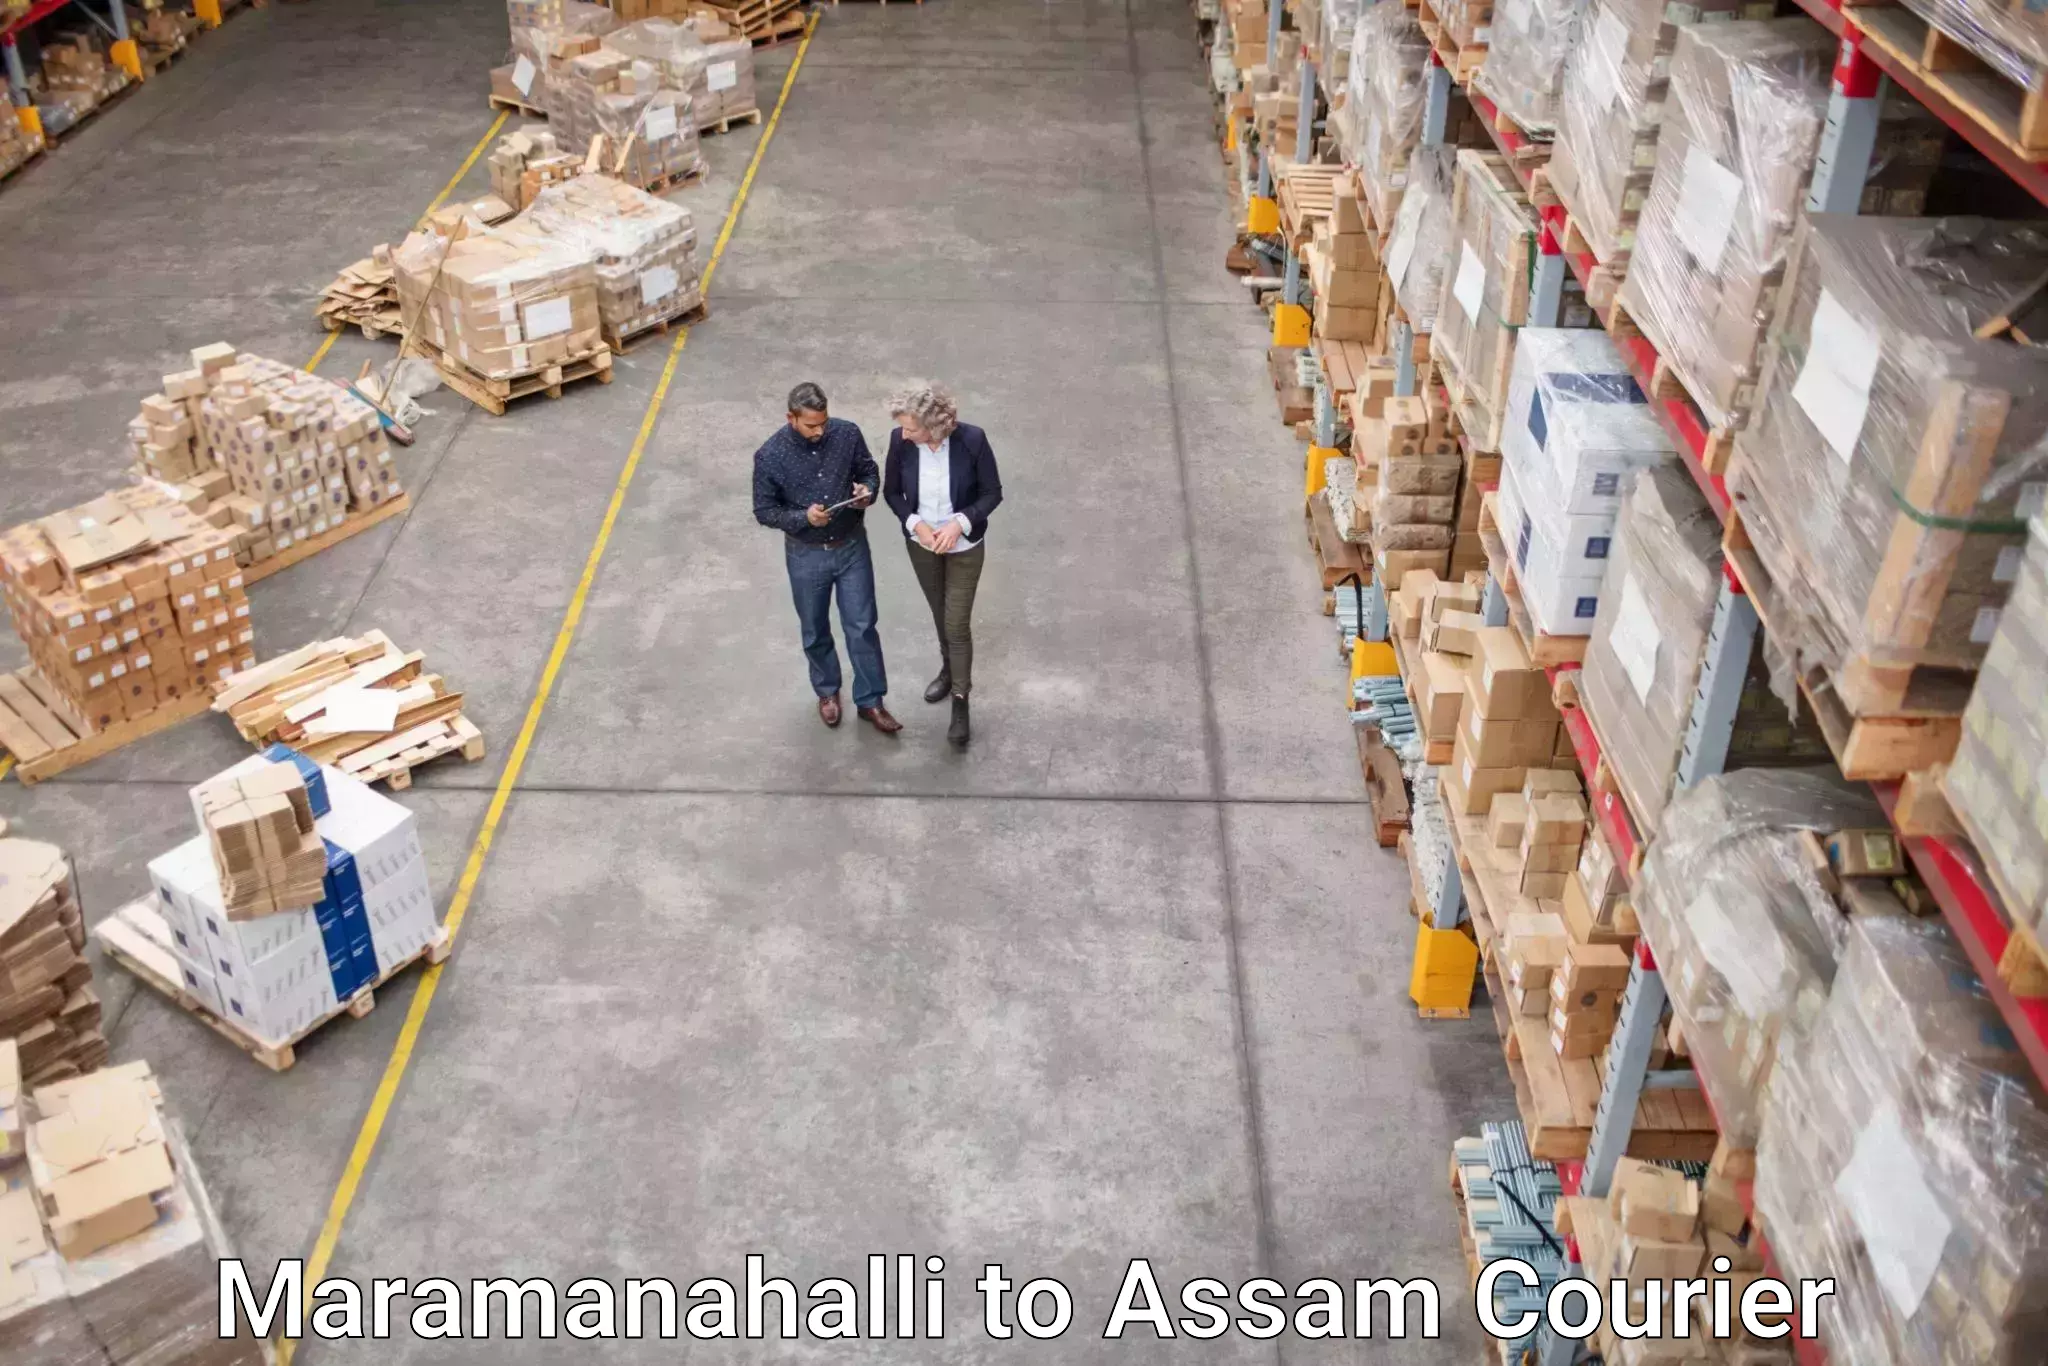 Doorstep delivery service Maramanahalli to Baksha Bodoland